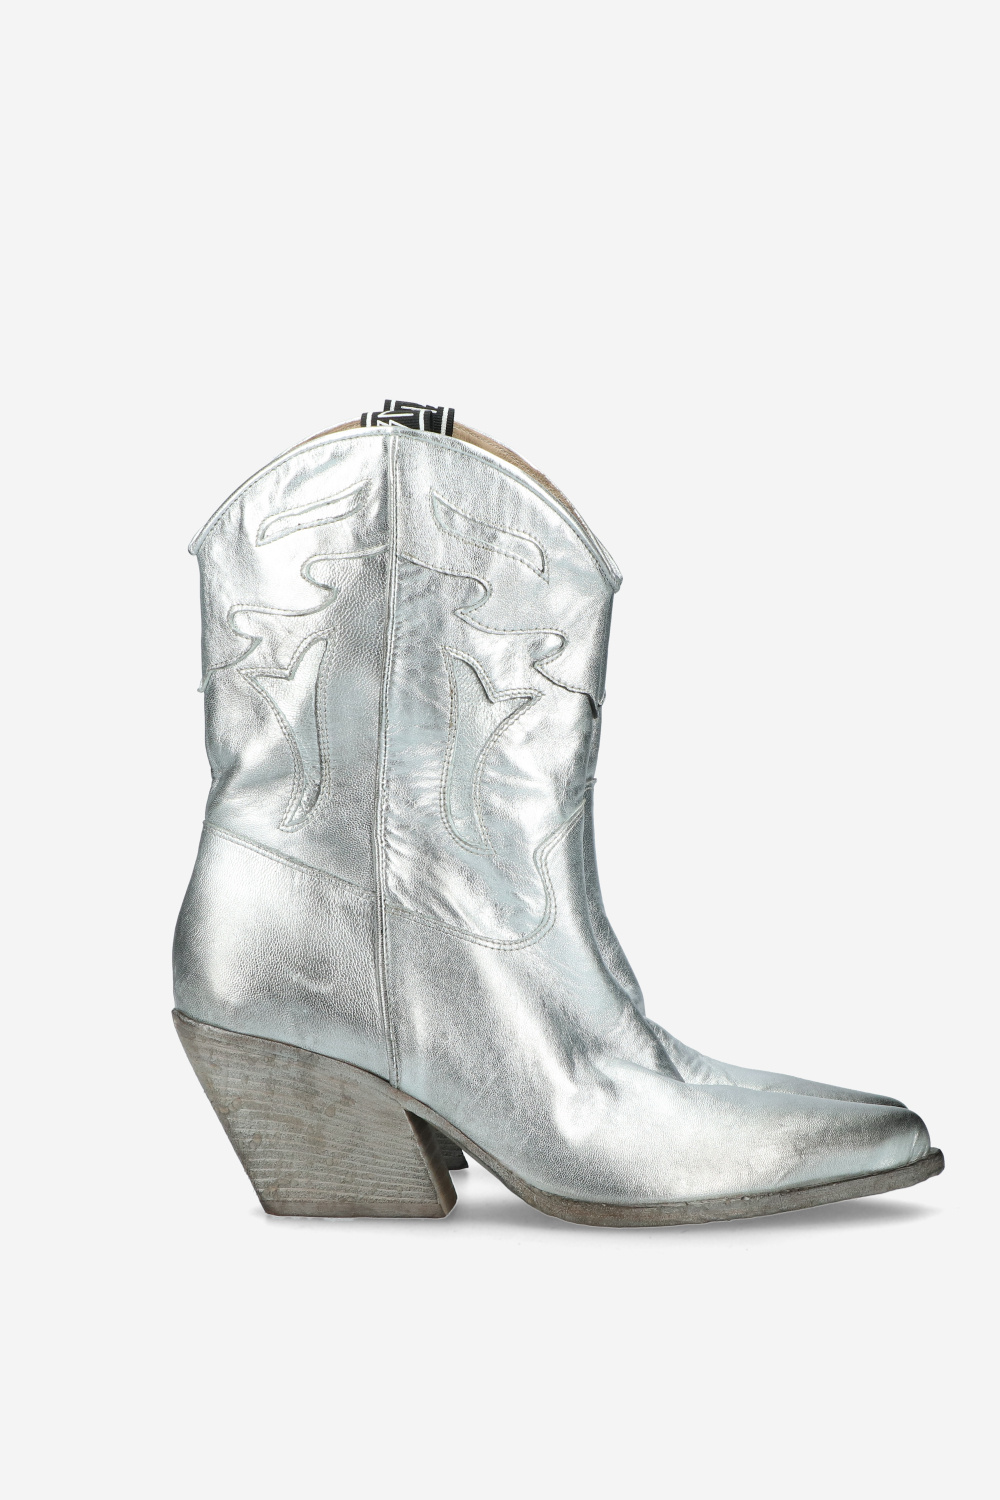 Elena Iachi Boots Silver